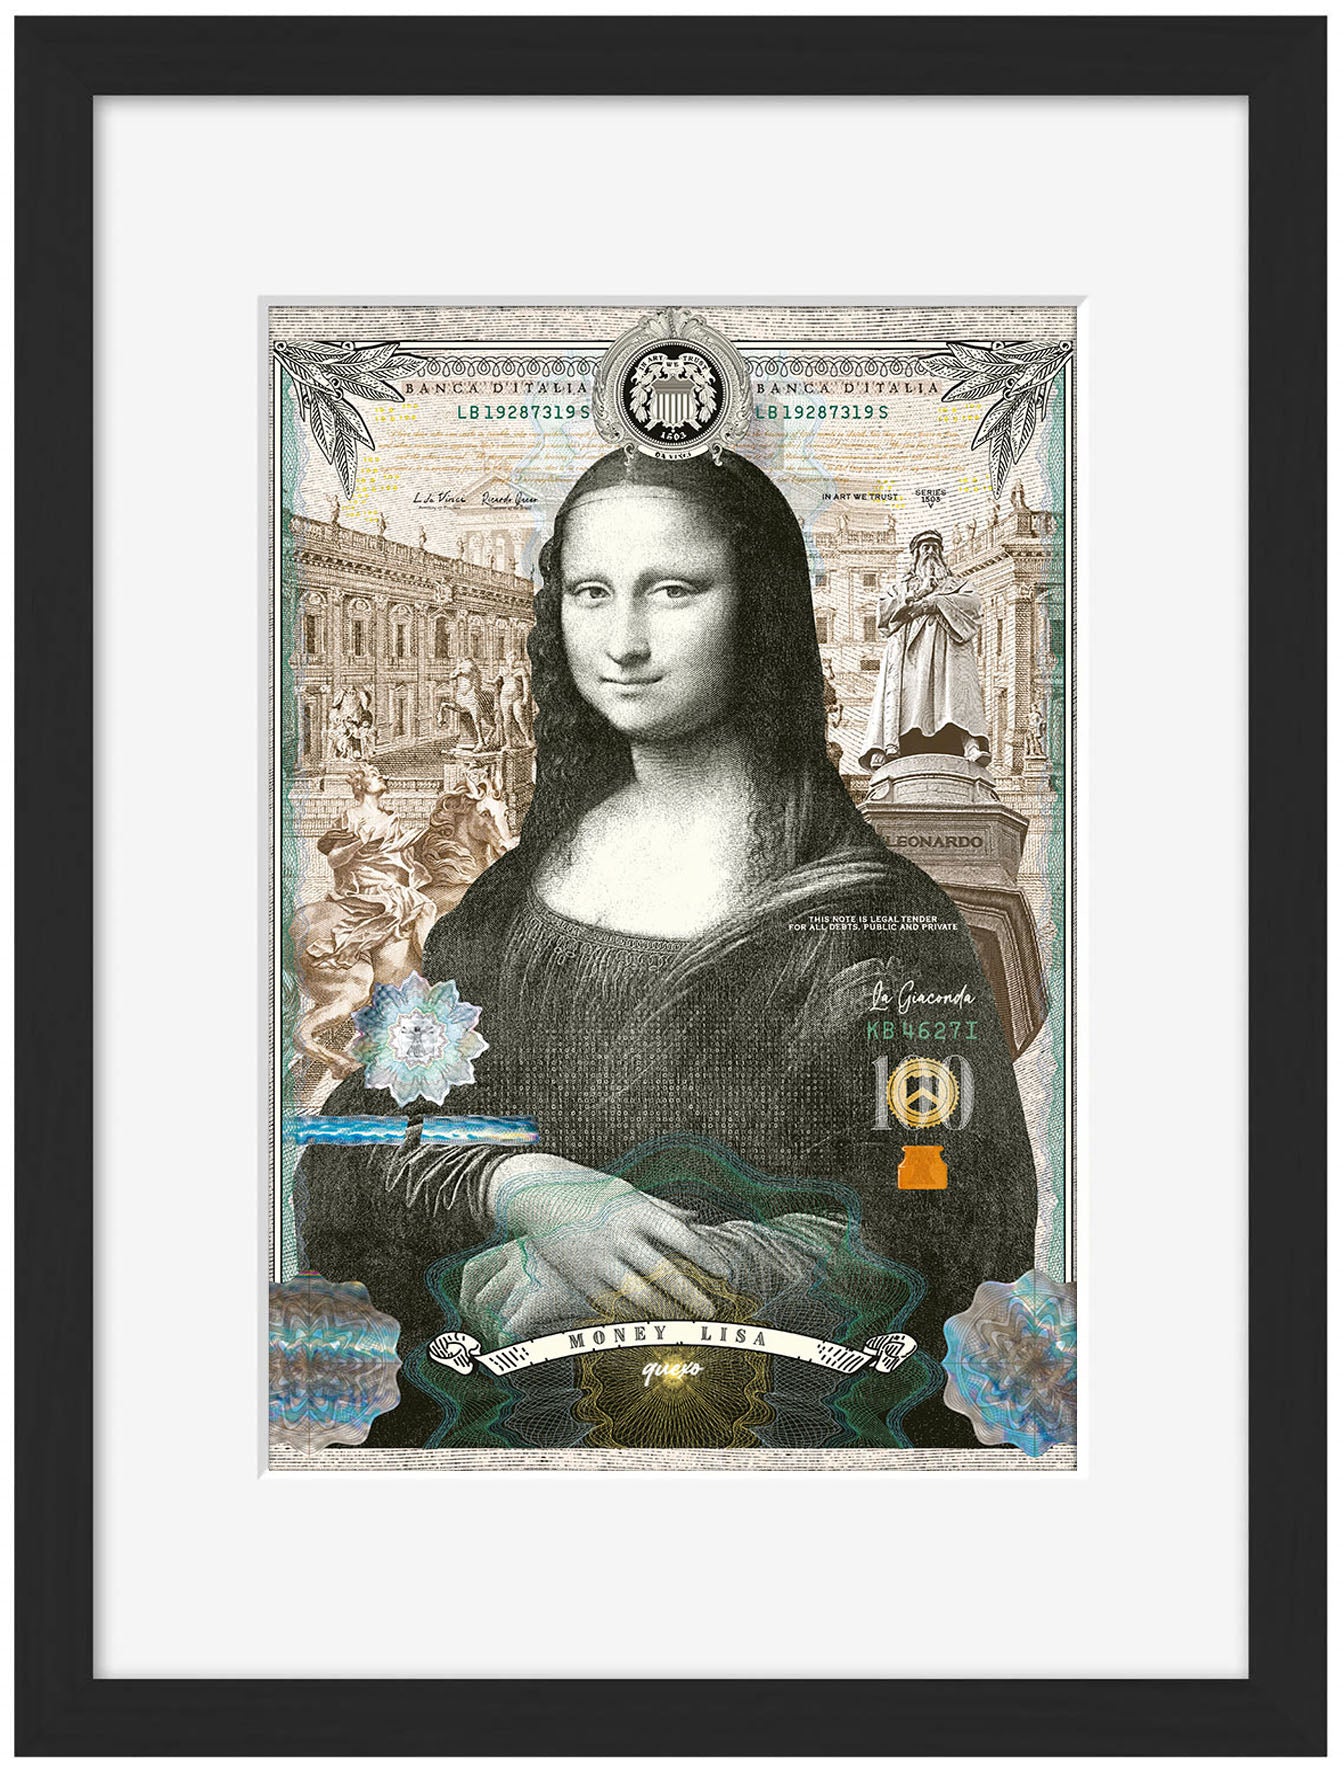 Money Lisa-print, ricardo-noble-Framed Print-30 x 40 cm-BLUE SHAKER